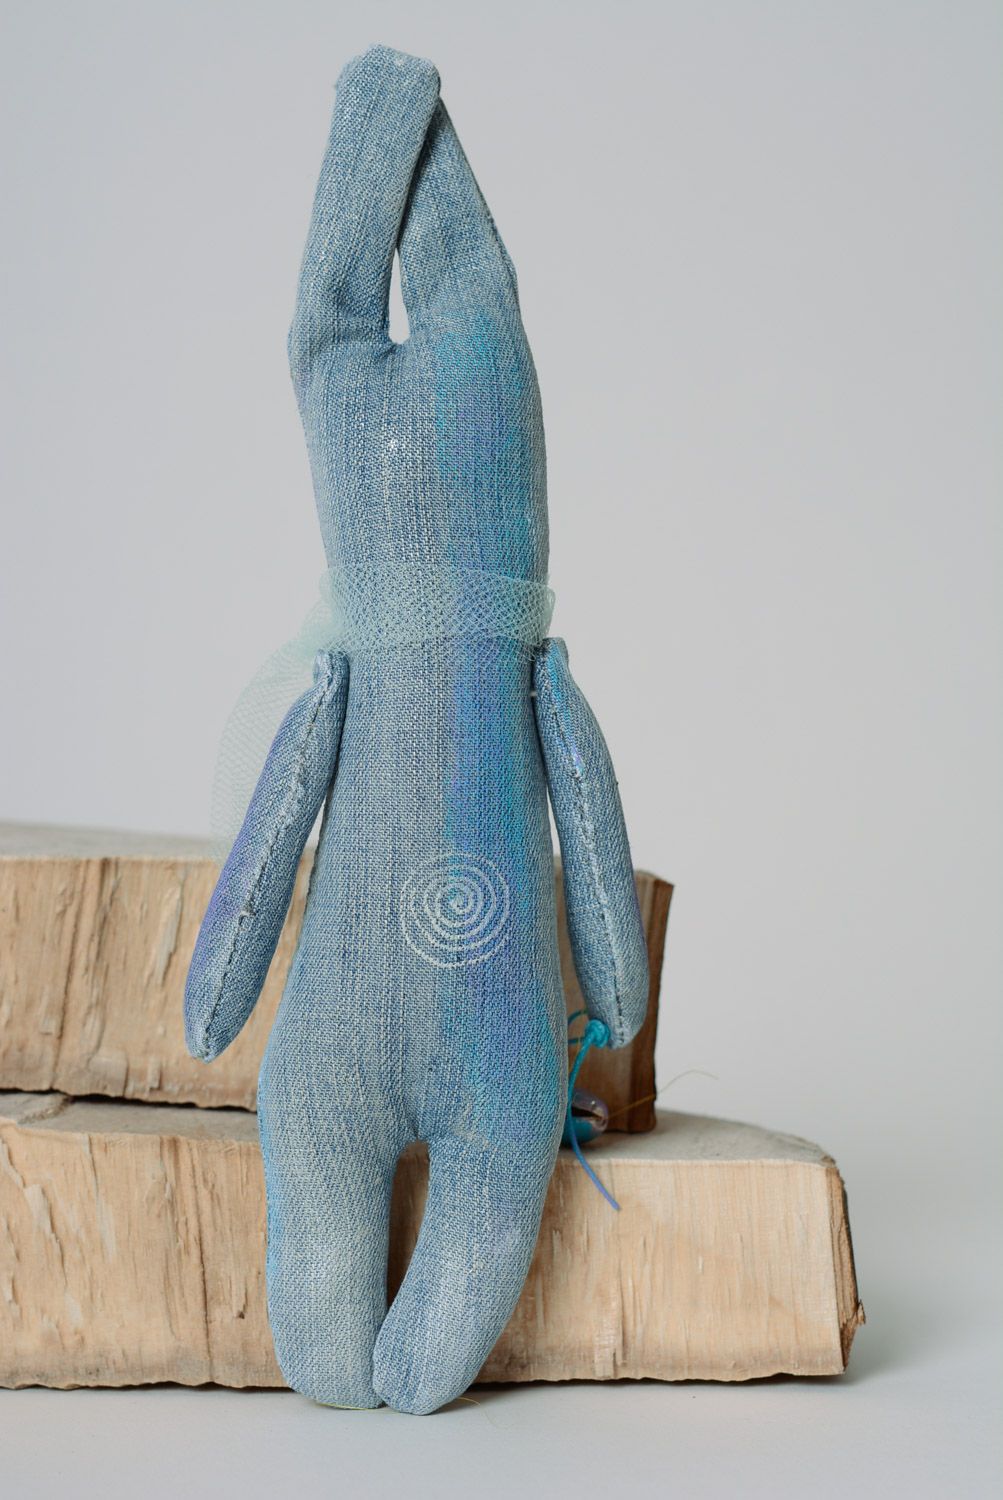 Голубая авторская игрушка расписная из джинса ручной работы мягкая и оригинальная фото 5